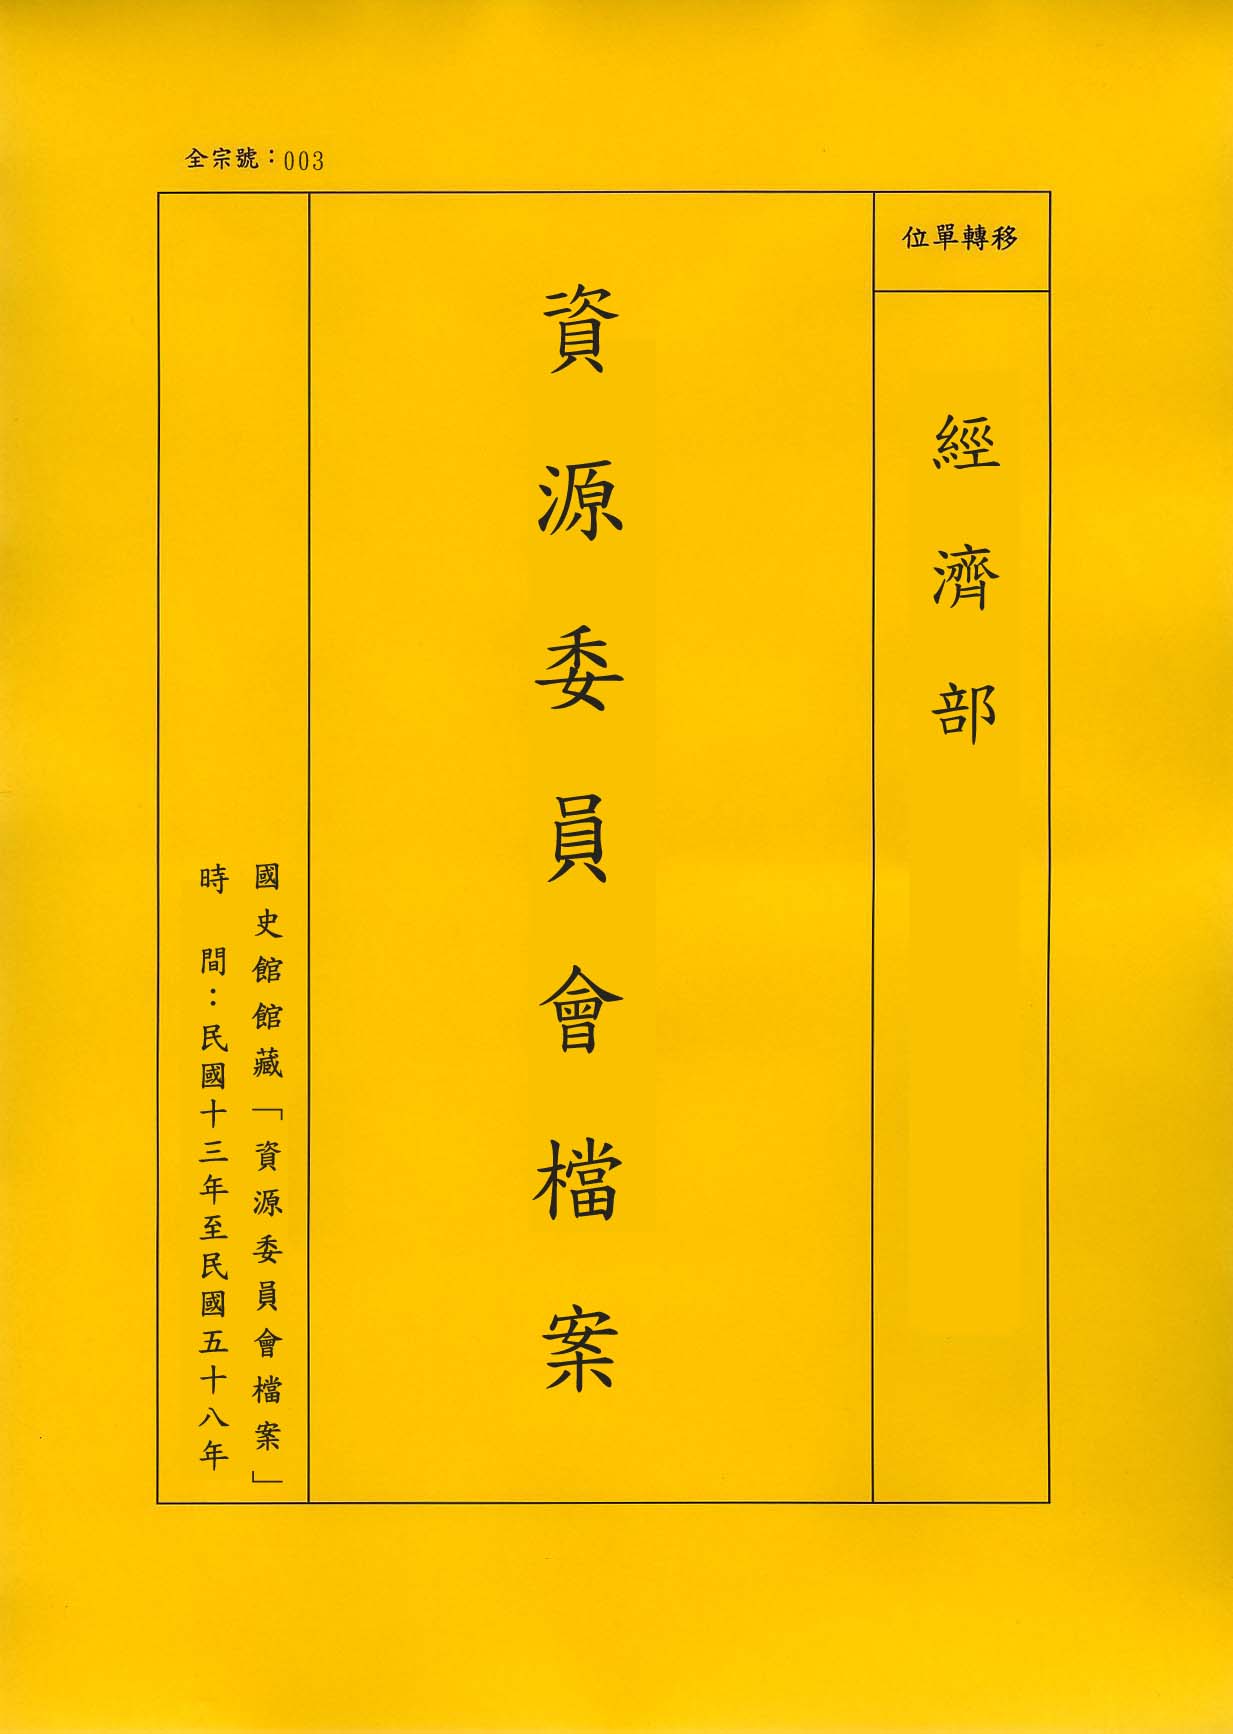 卷名:臺灣泰山磚瓦公司固定資產明細錄(003-010407-0118)